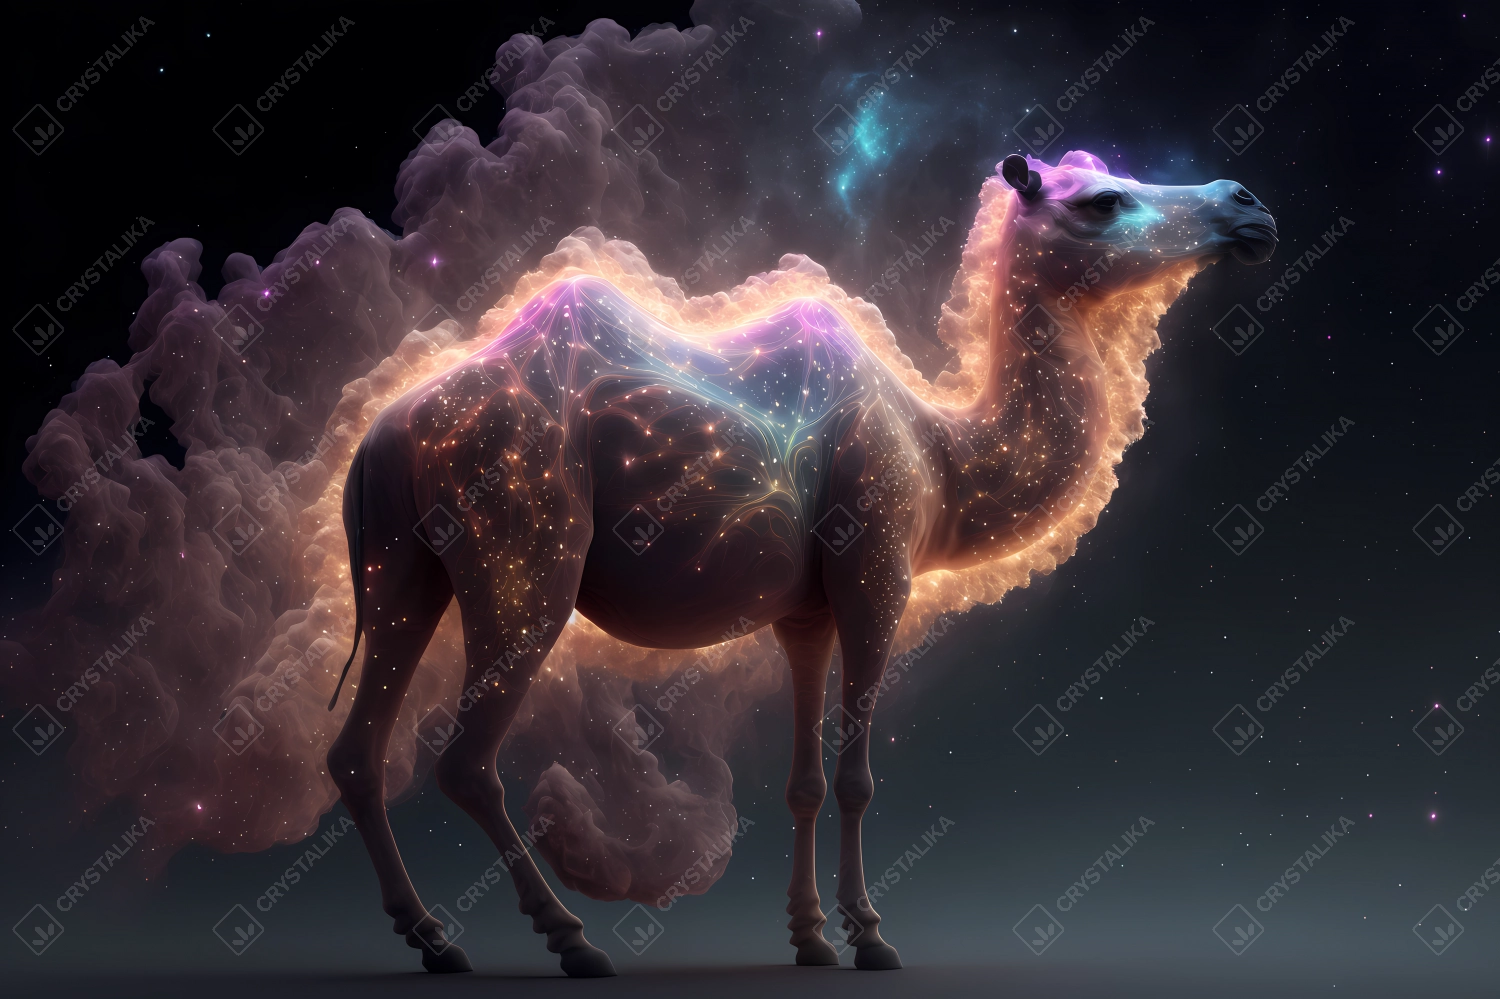 Spirit animal - Camel